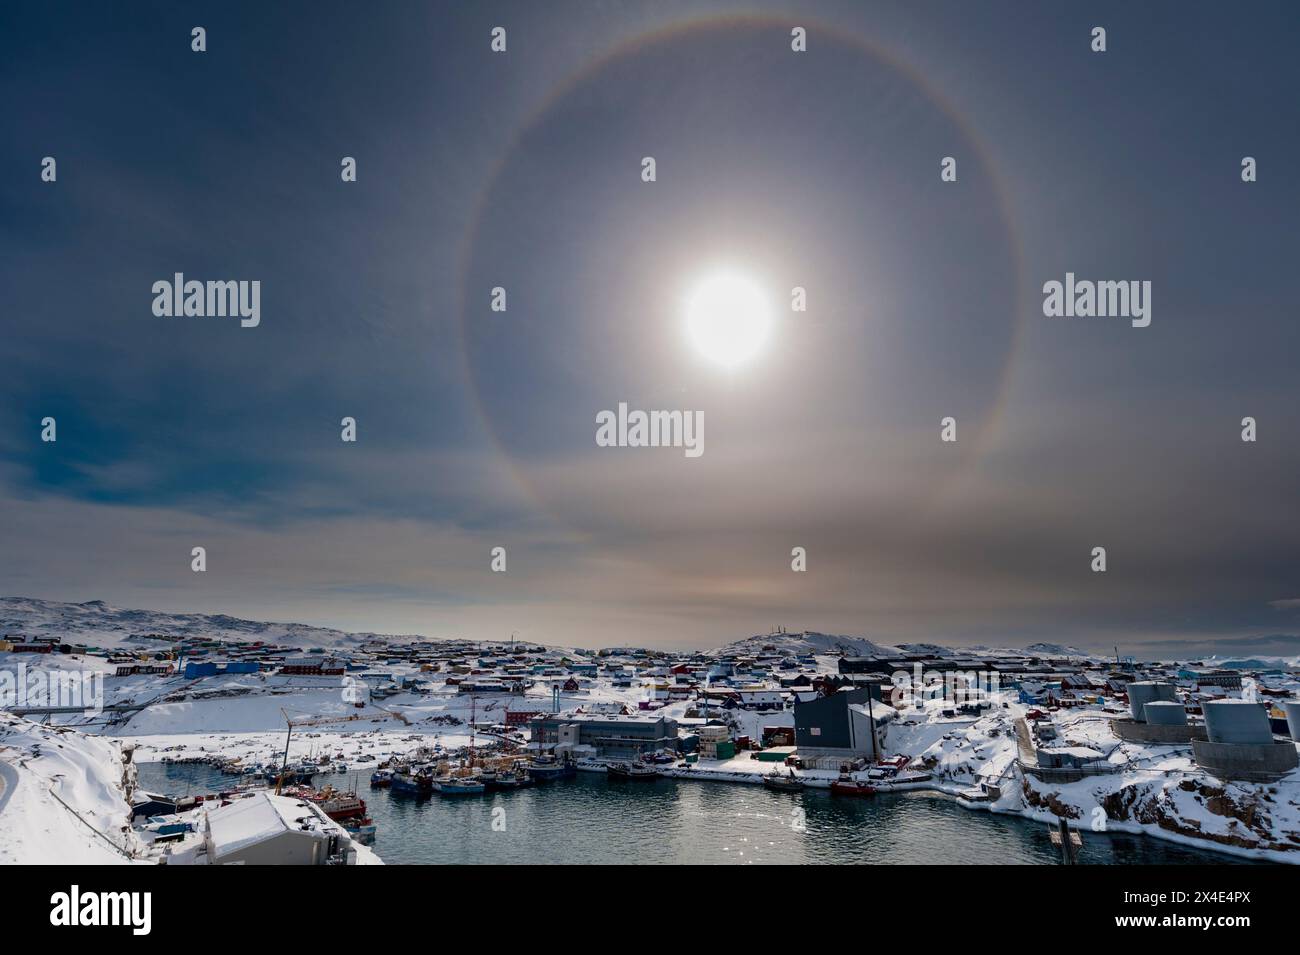 Ein solarer Halo, ein Phänomen, das durch die Wechselwirkung von Licht mit Eiskristallen in der Atmosphäre verursacht wird. Ilulissat, Grönland. Stockfoto